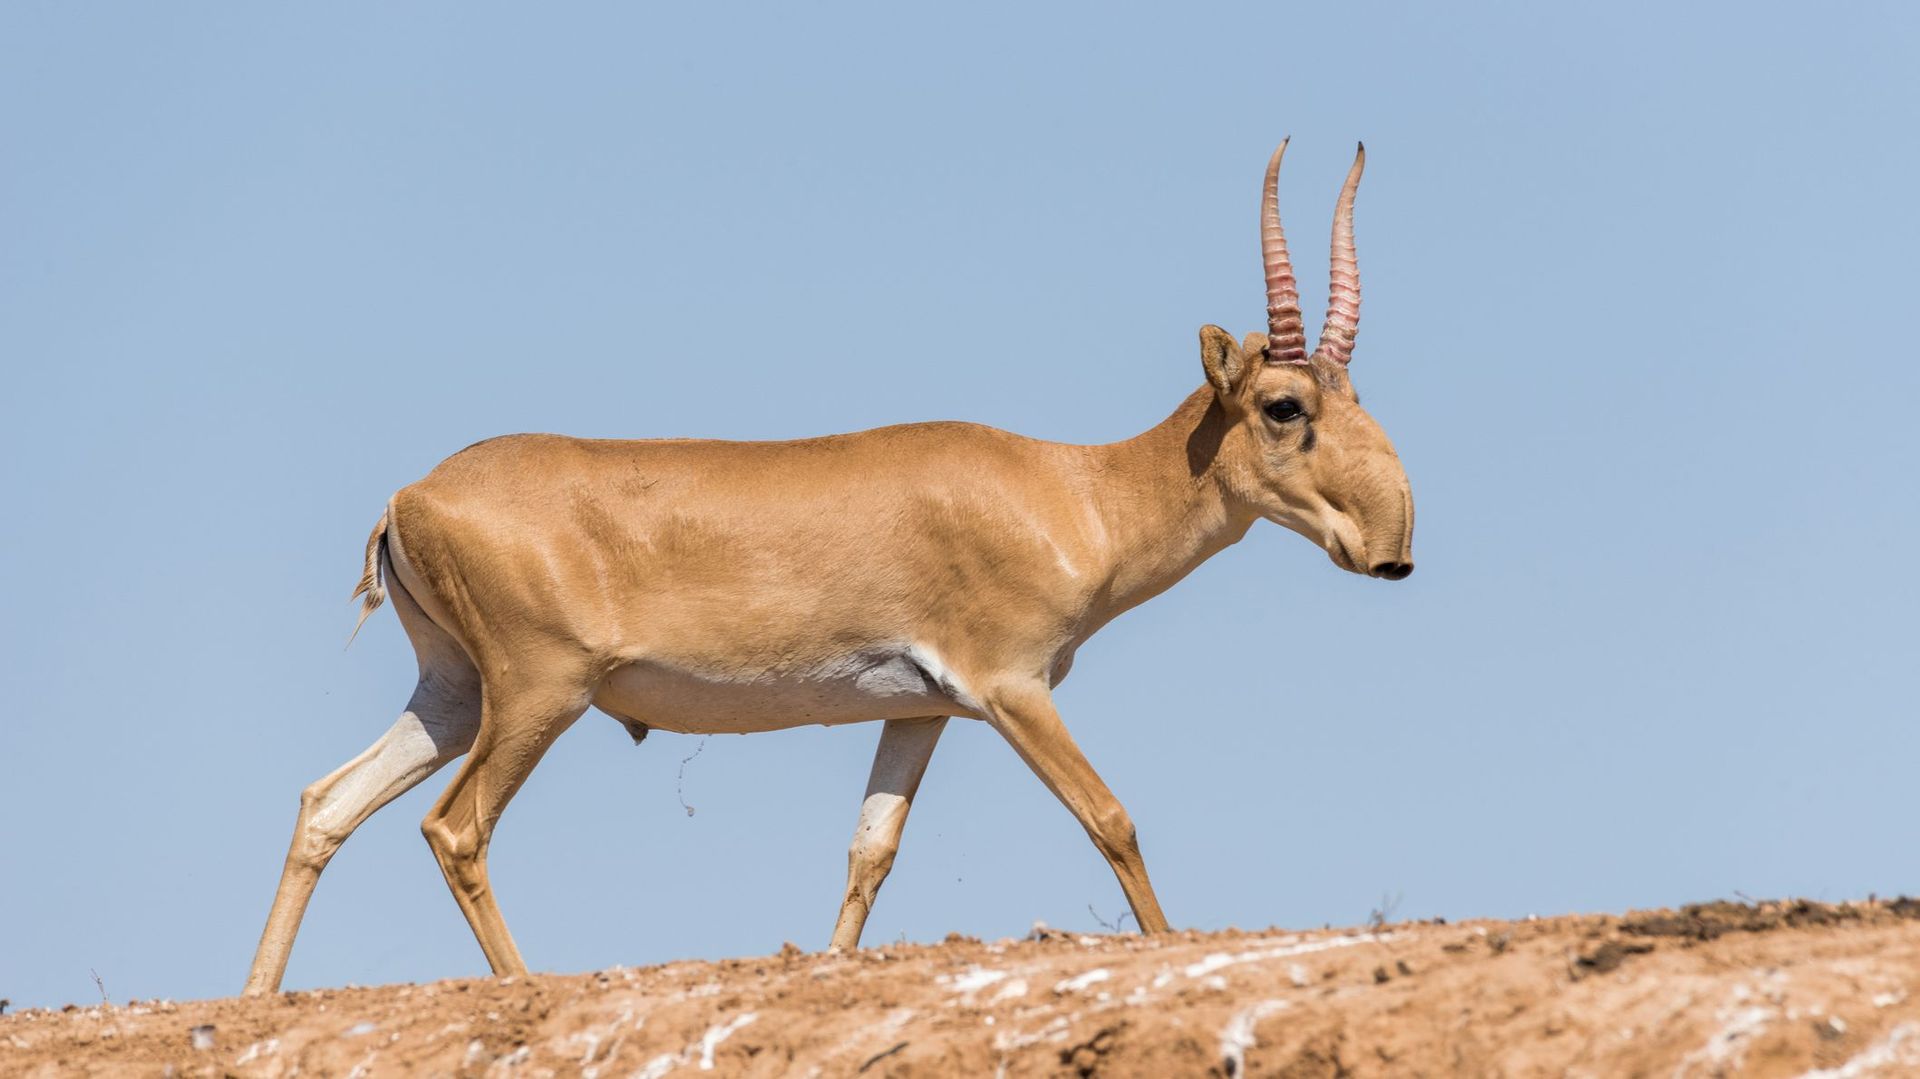 La saïga (saiga tatarica) est une espèce d'antilope vivant sur les steppes d'Asie centrale